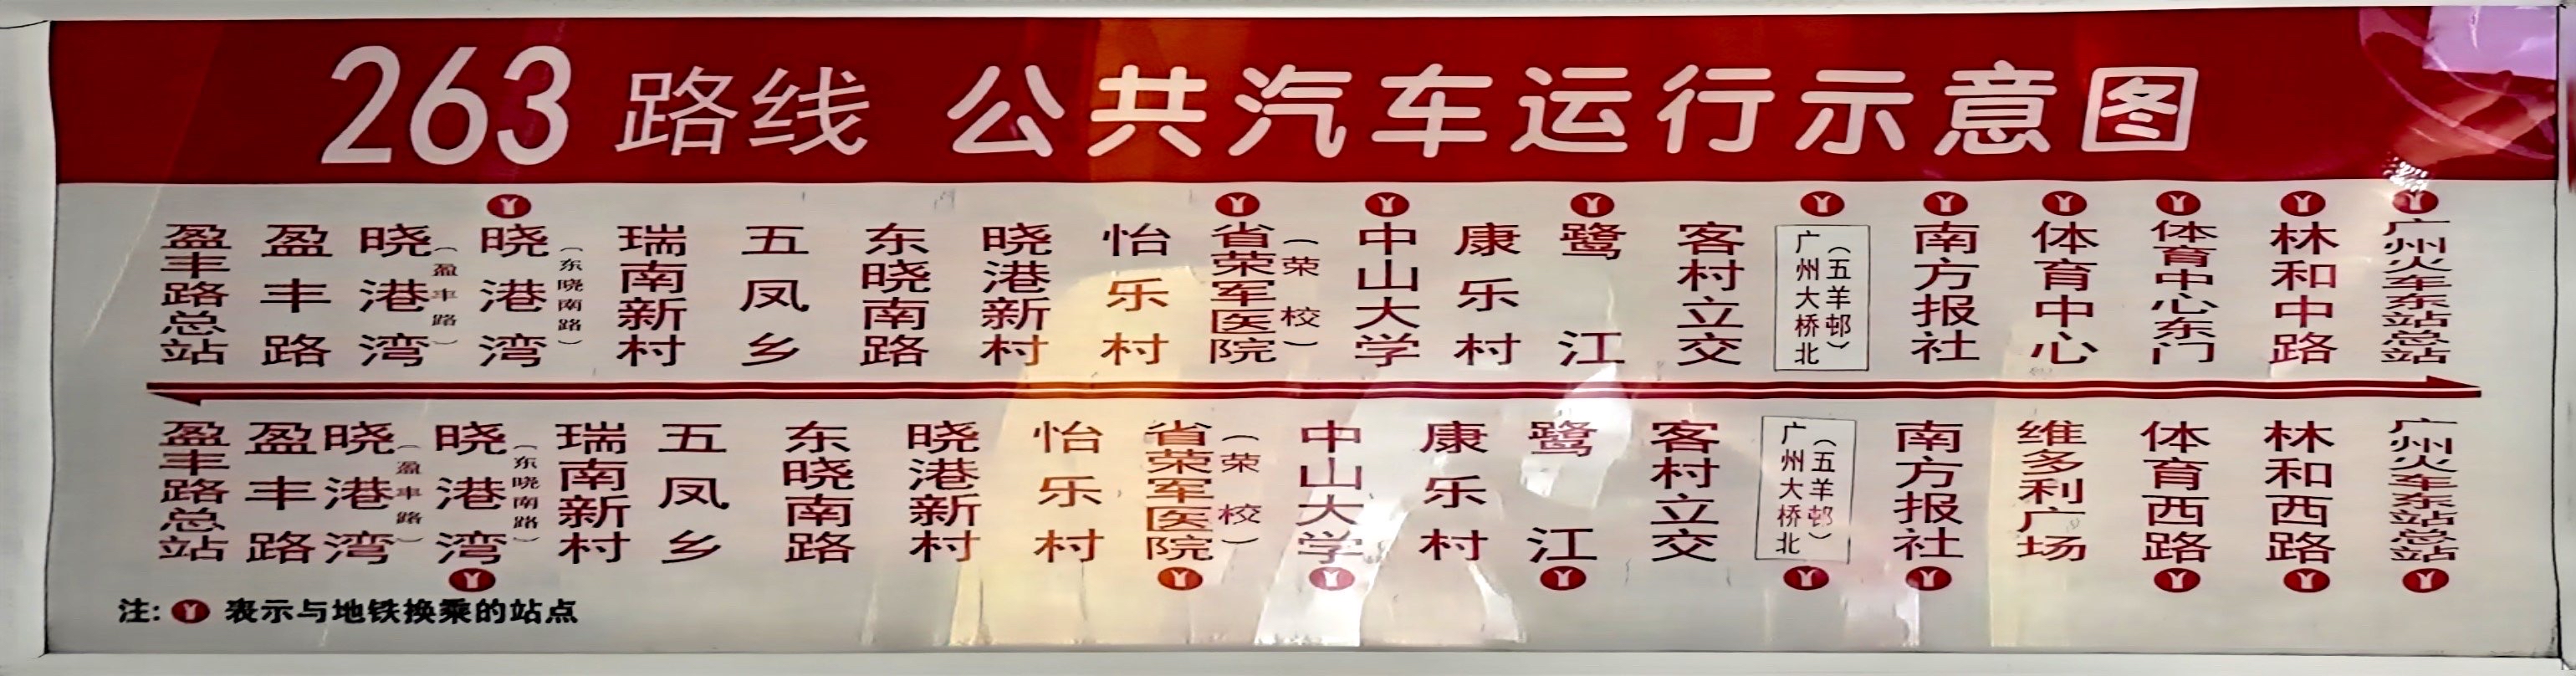 广州263路公交车路线